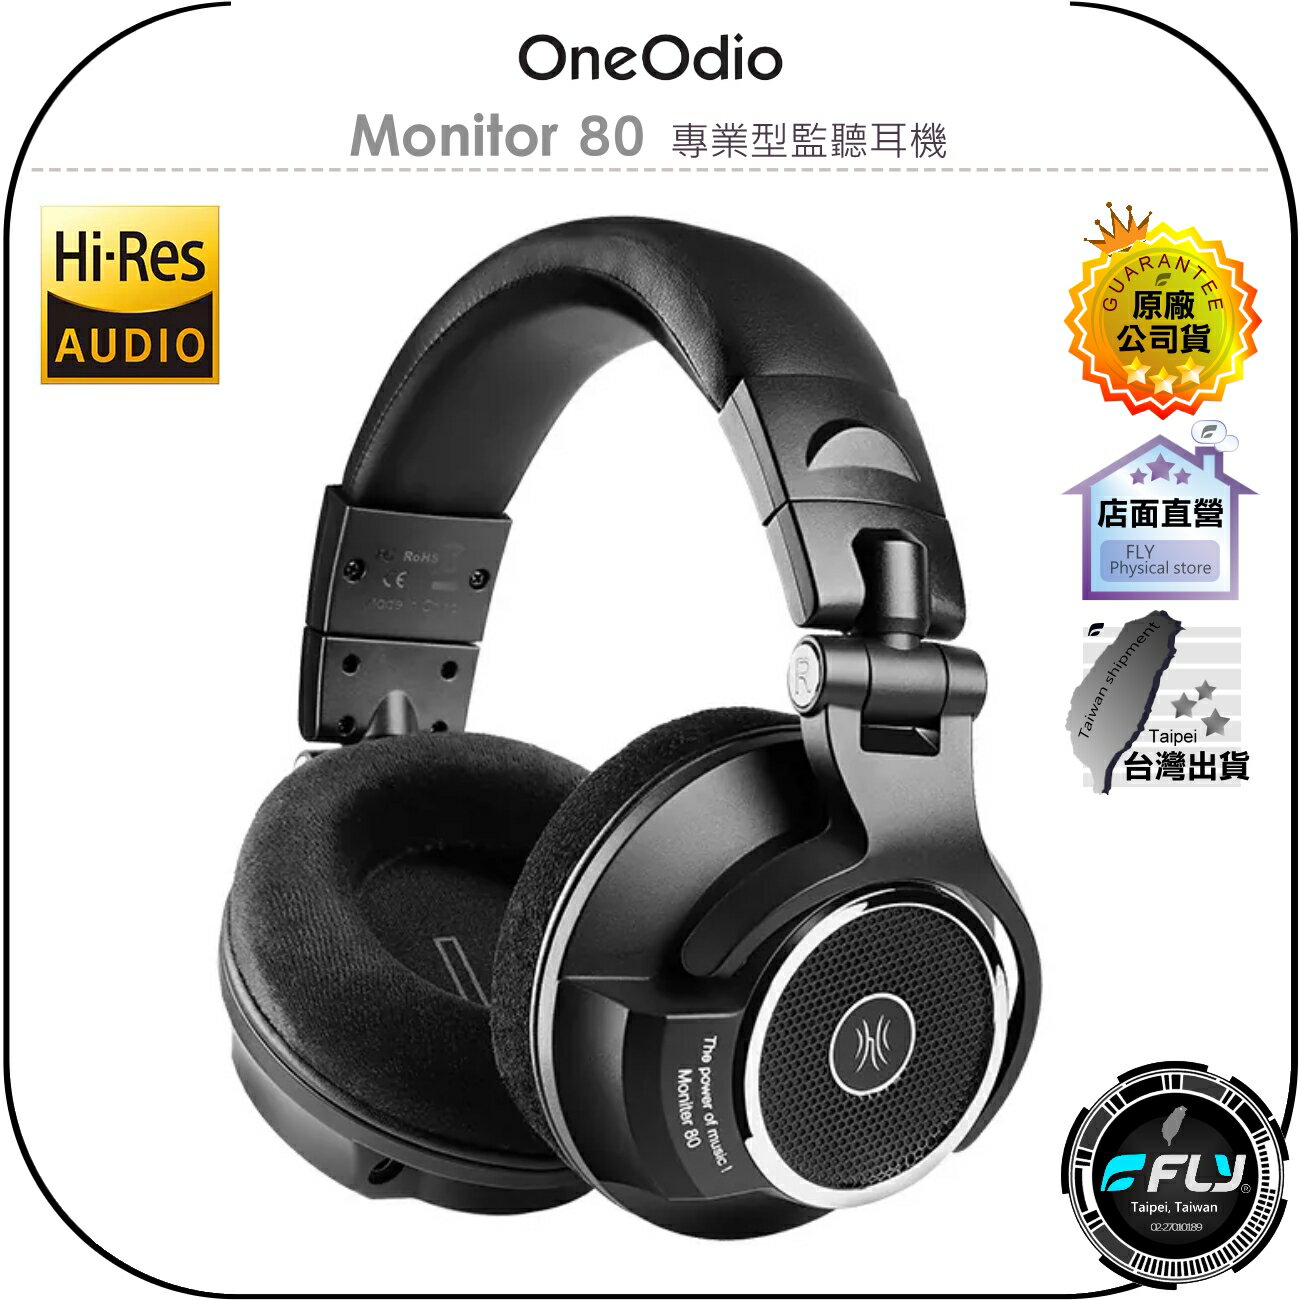 【飛翔商城】OneOdio Monitor 80 專業型監聽耳機◉公司貨◉頭戴耳罩◉寬闊音場◉專業音質◉錄音室級